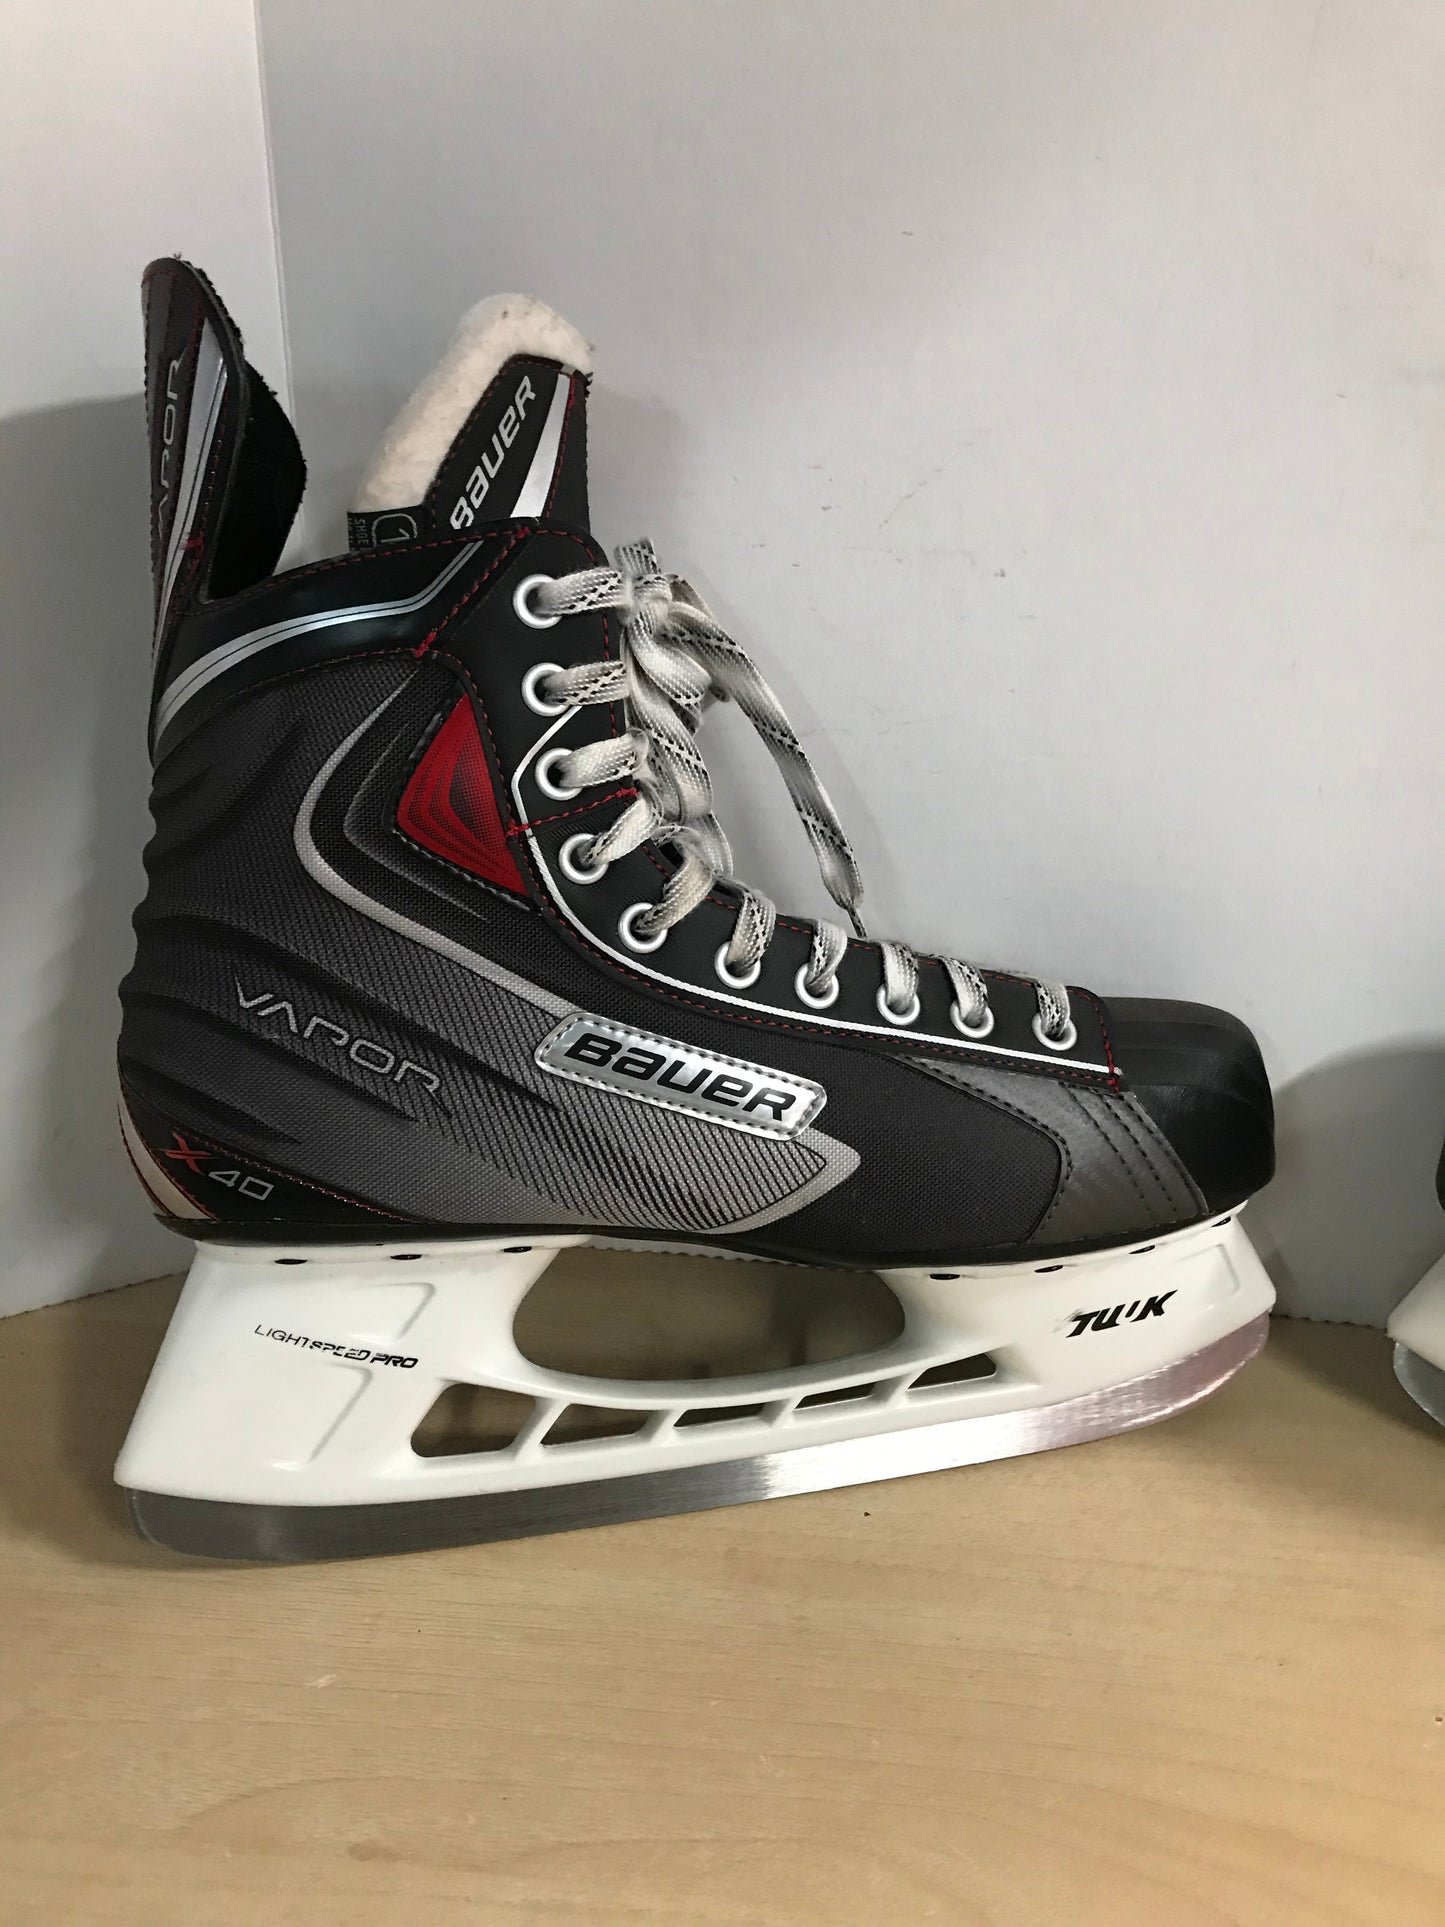 Hockey Skates Men's Size 11.5 Shoe Size Bauer Vapor X.40 Excellent